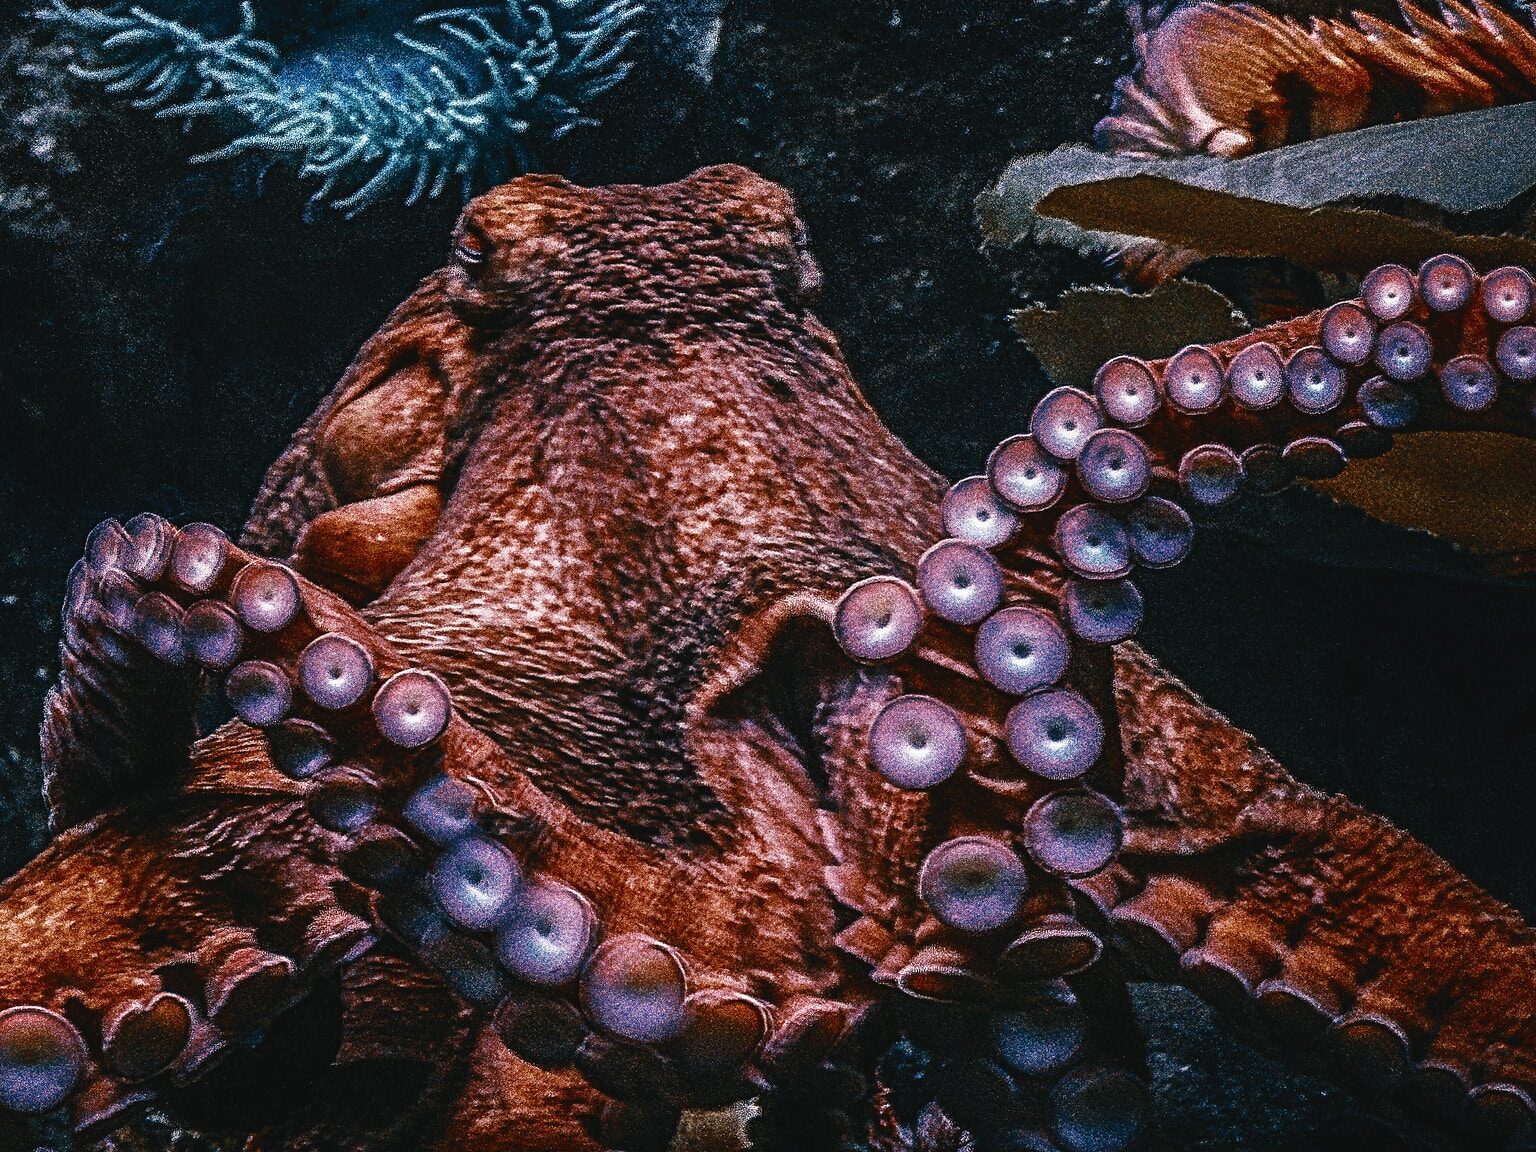 brown Octopus